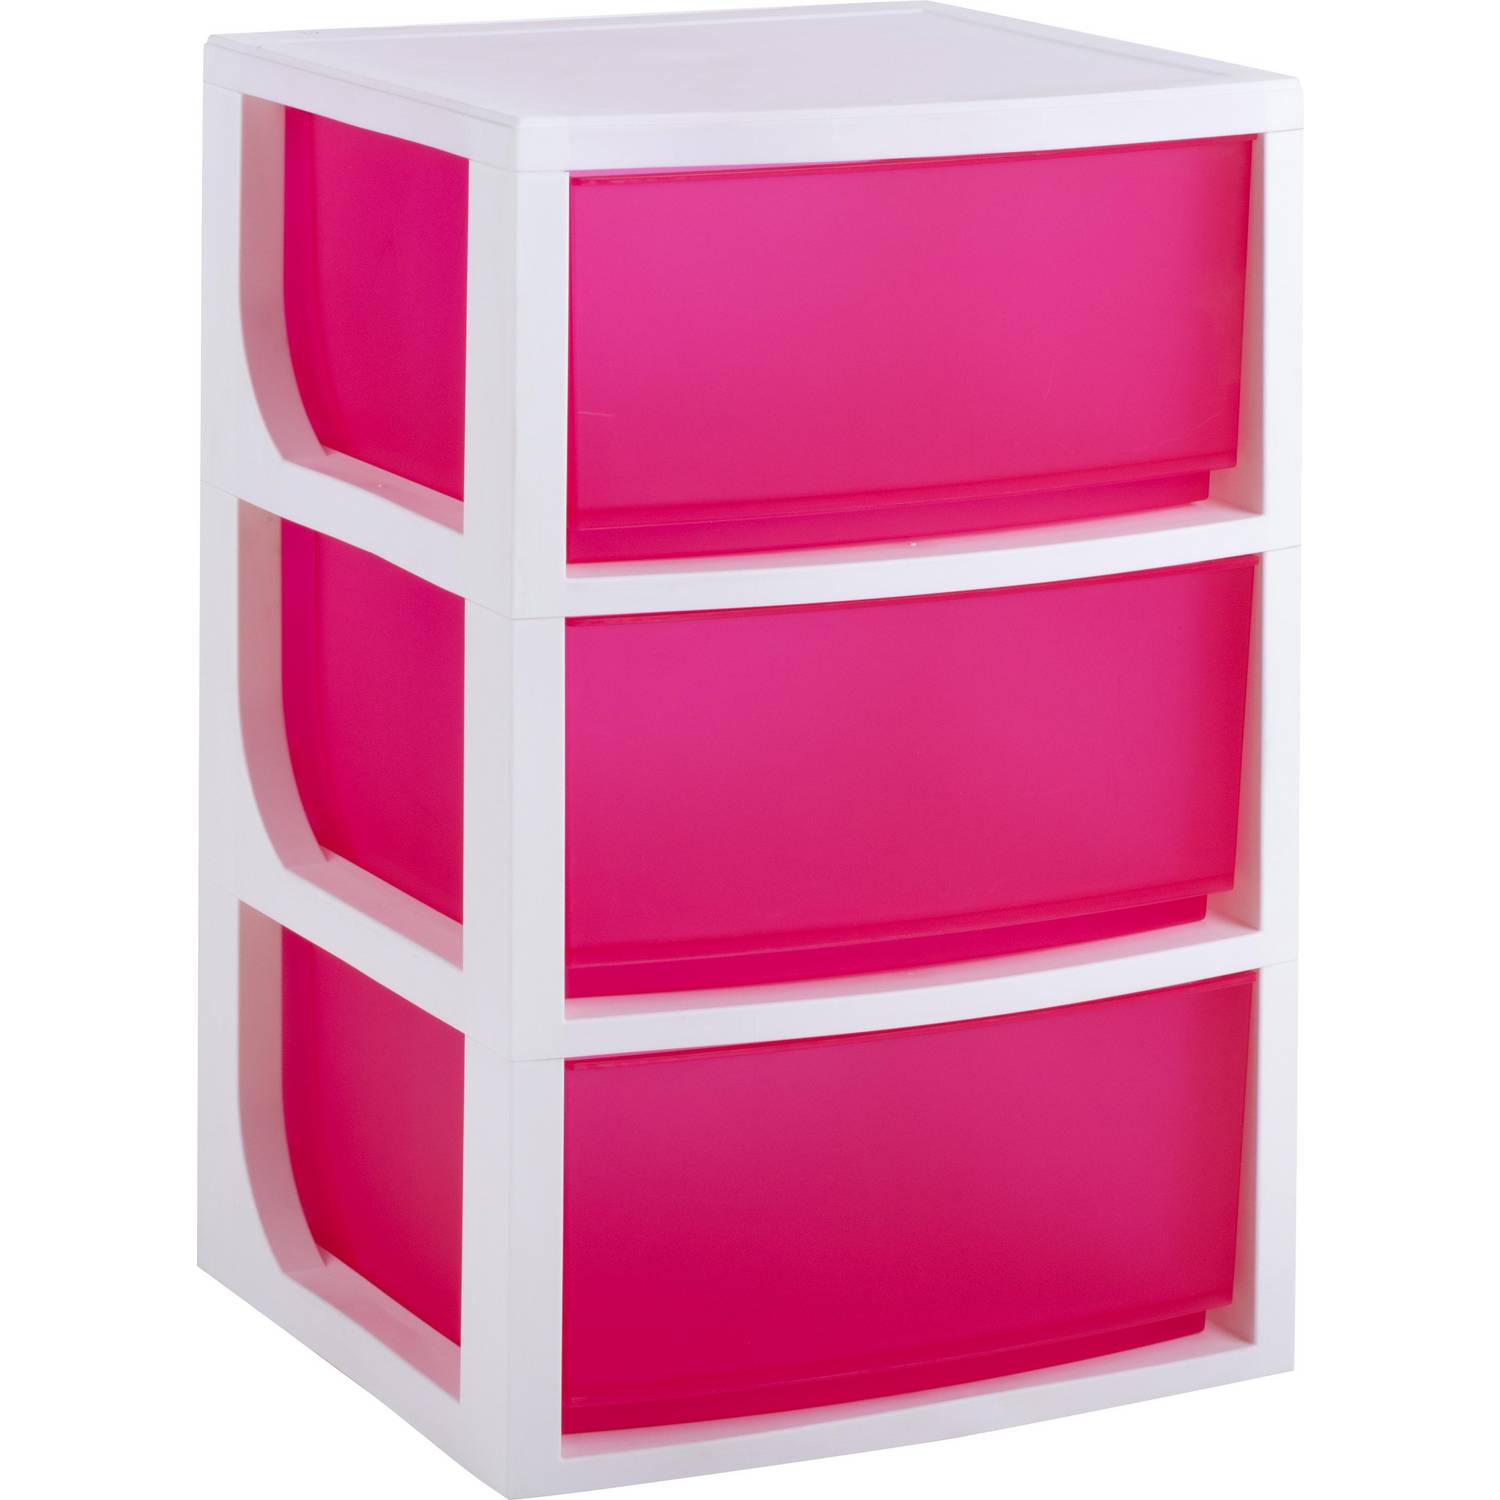 Cajonera multiuso plástico 70x39x50 cm cajones rosado | Sodimac